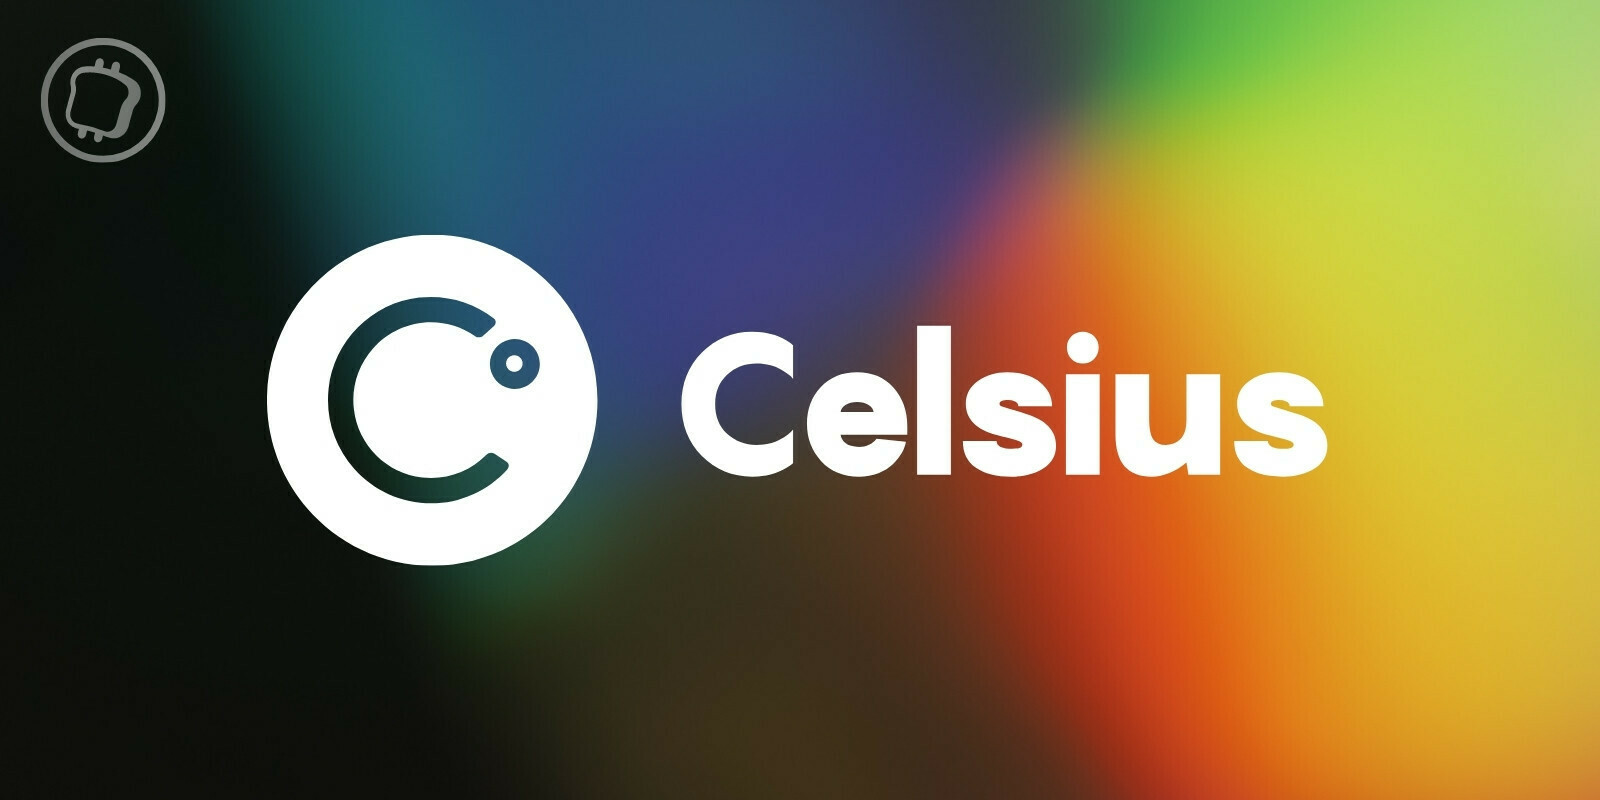 Celsius pourrait bientôt autoriser les retraits pour certains utilisateurs